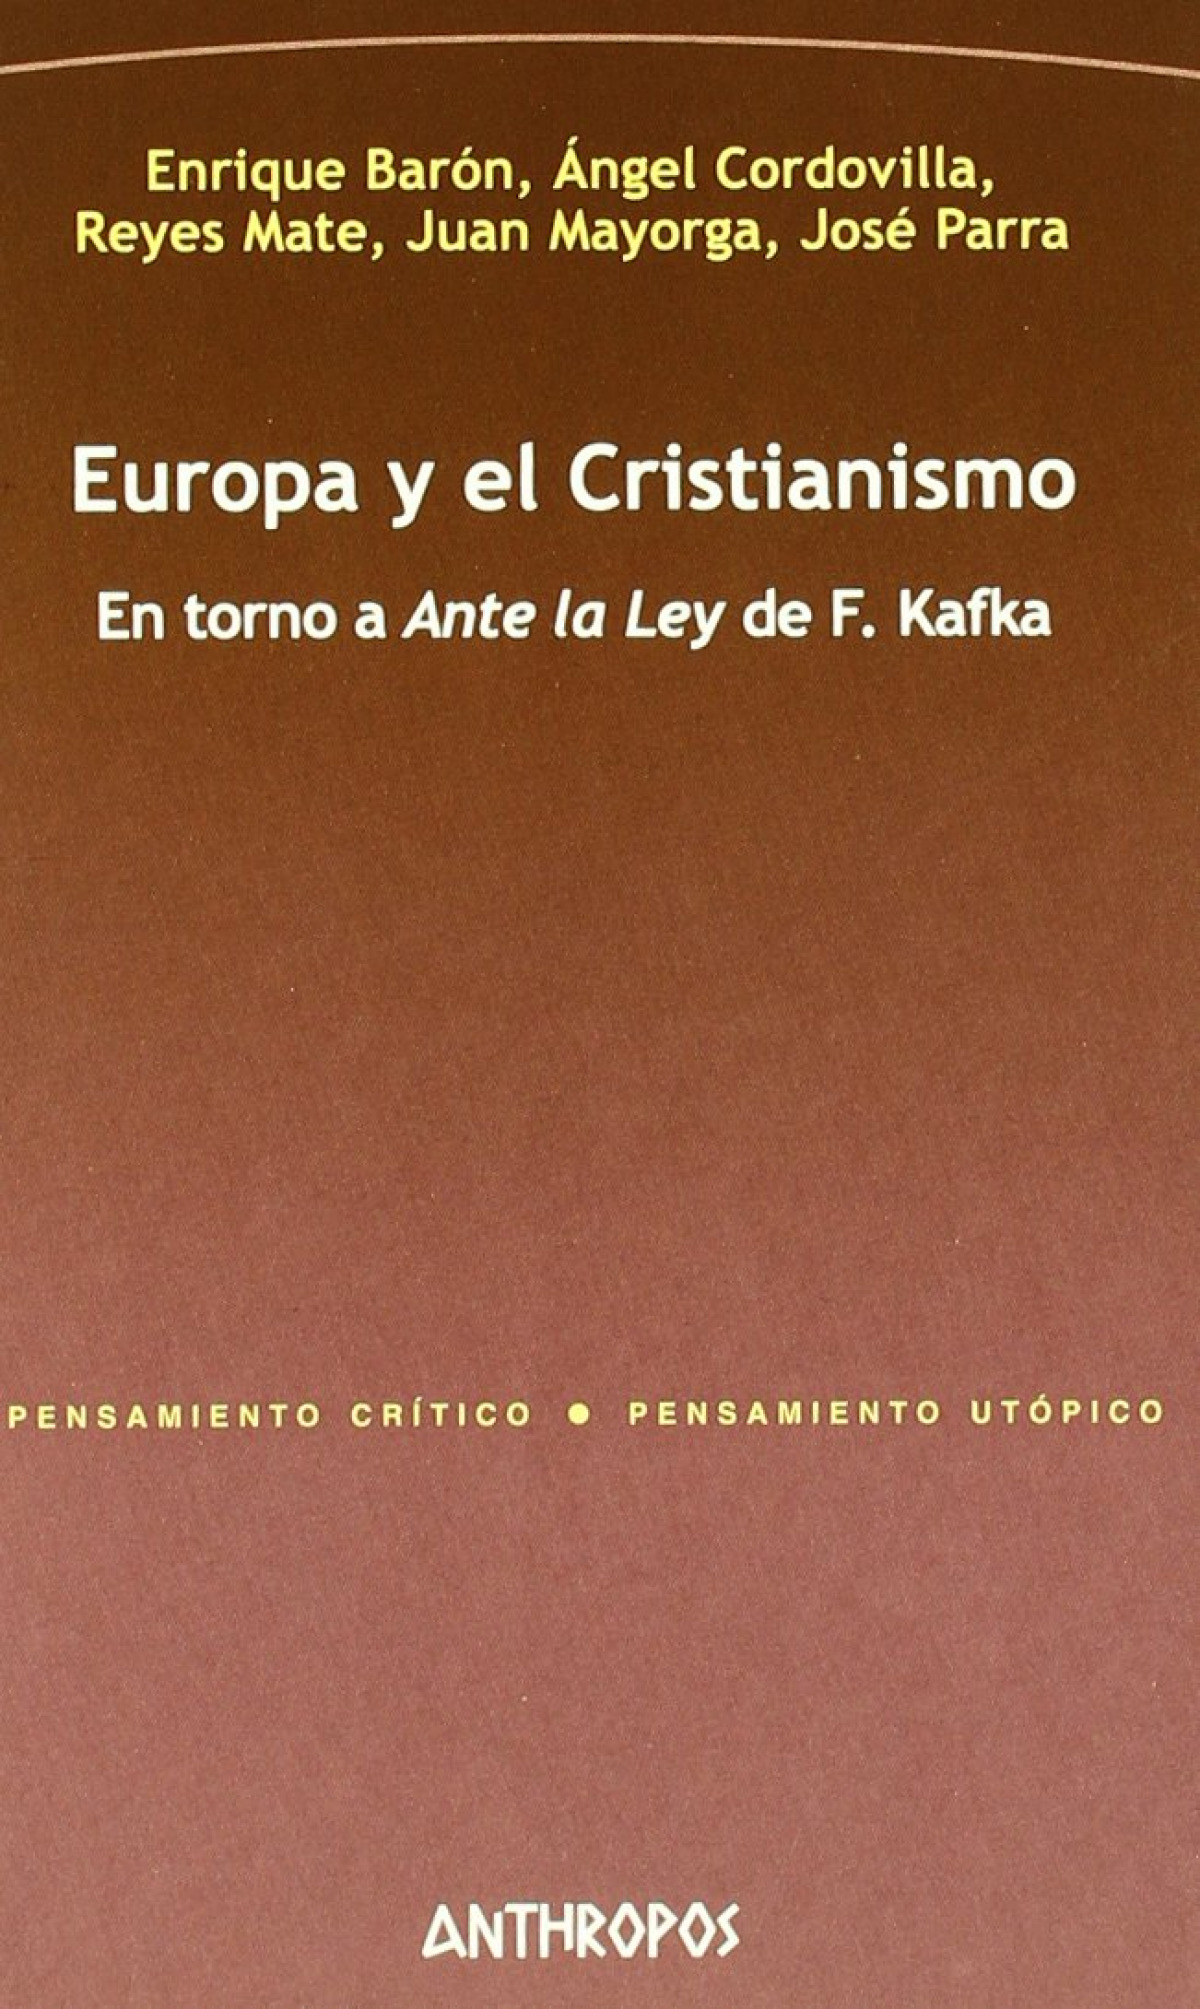 Europa y el cristianismo entorno a ante la ley de f. kafka - Baron Y Otros